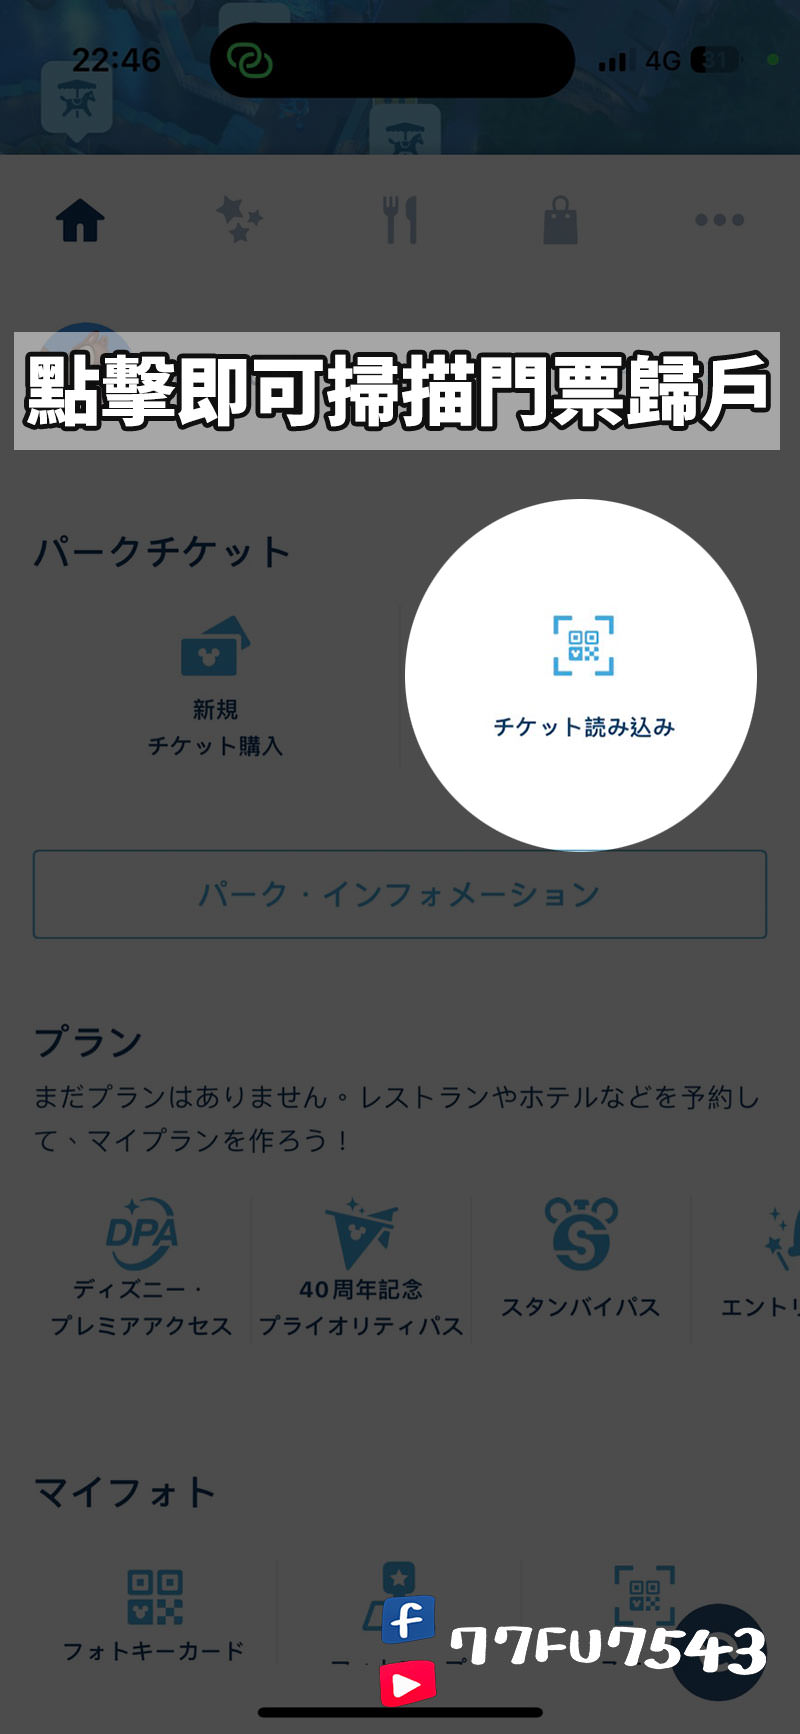 東京迪士尼App匯入門票